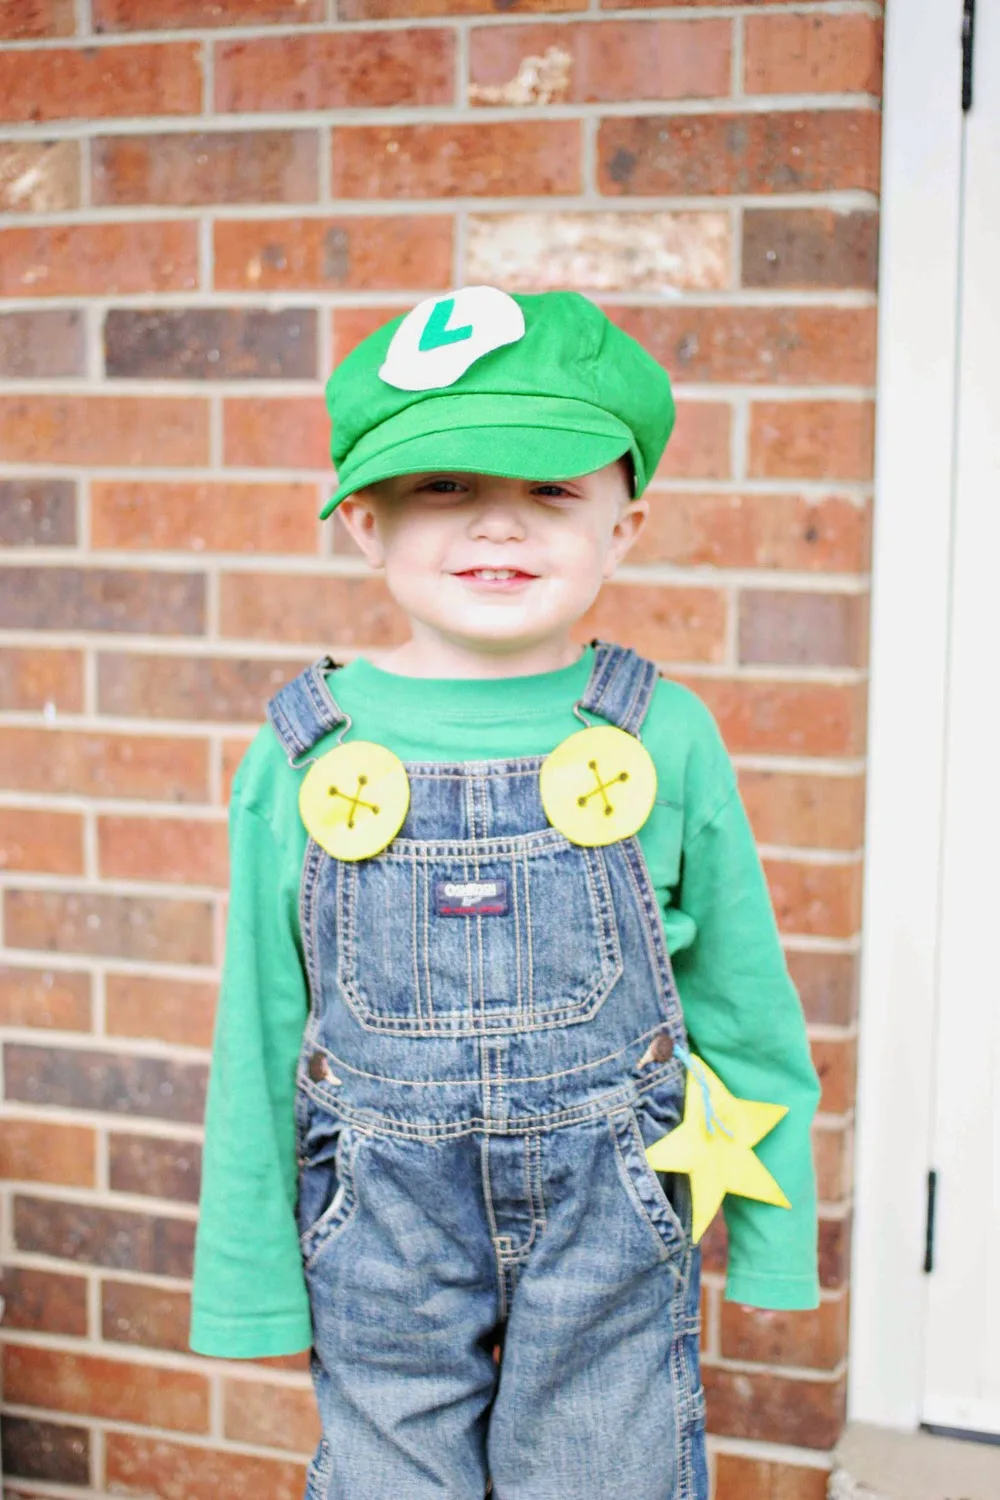 luigi costume on little boy